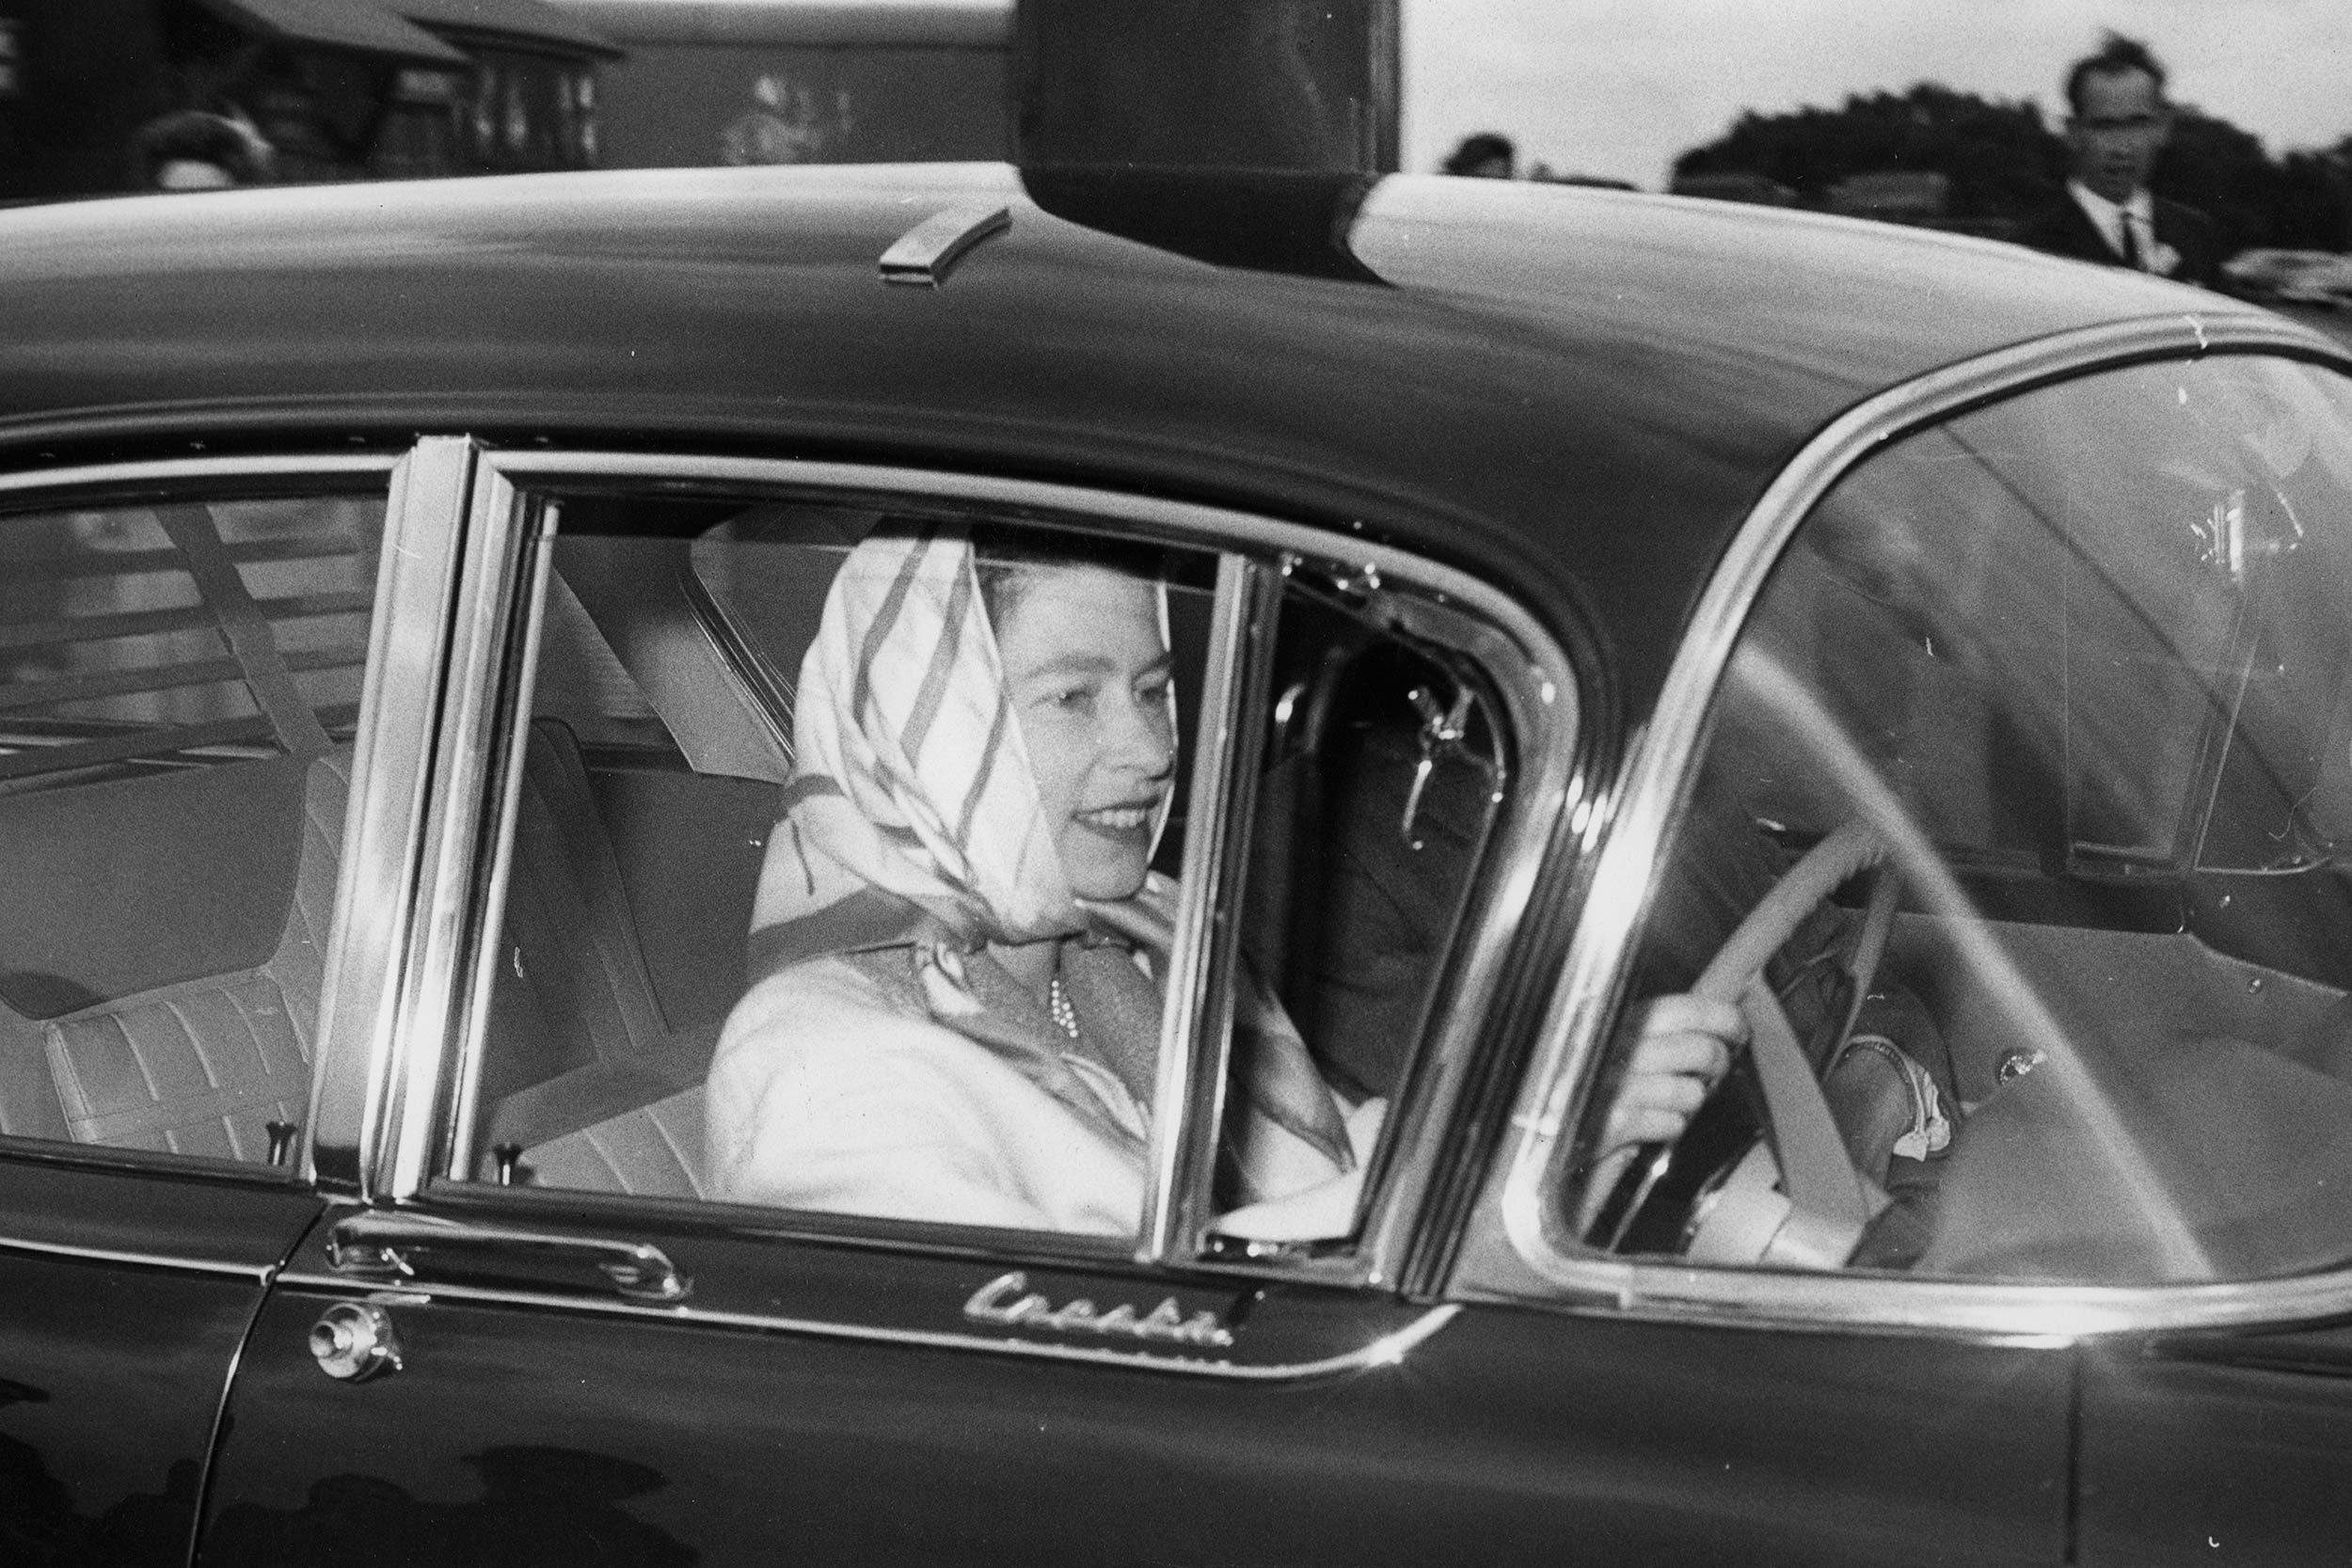 Queen Elizabeth driving a car.